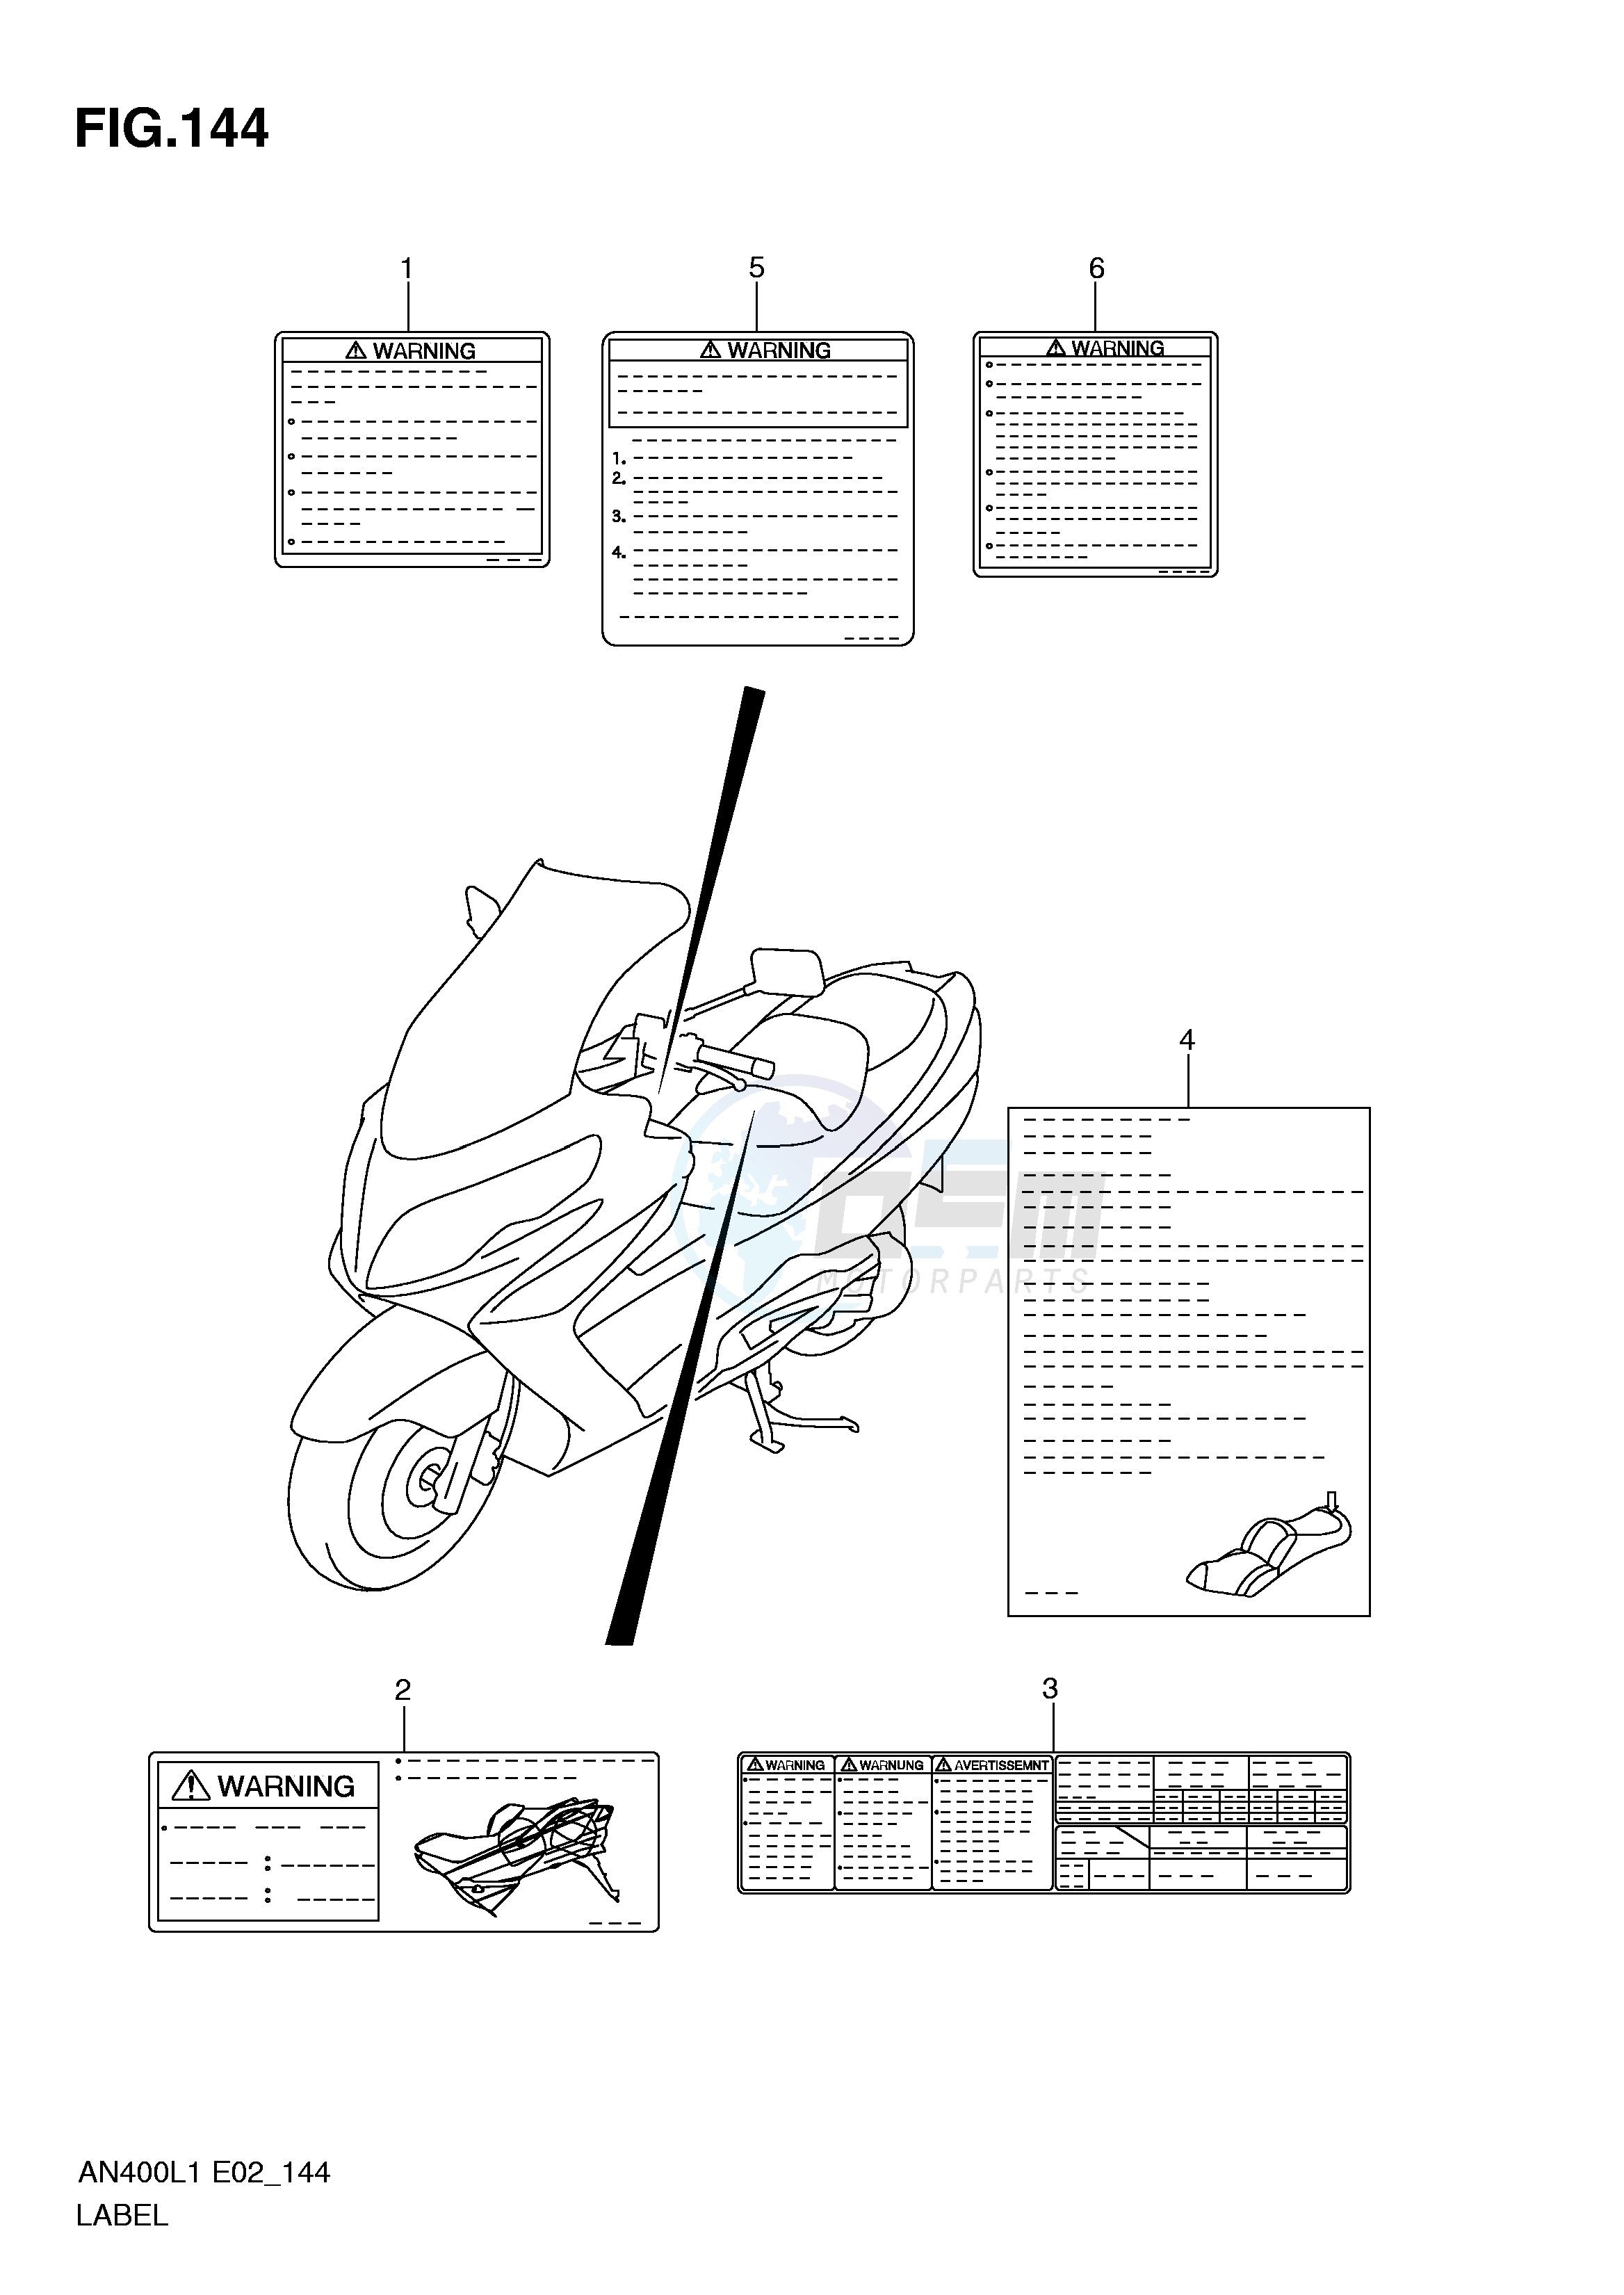 LABEL (AN400AL1 E19) blueprint